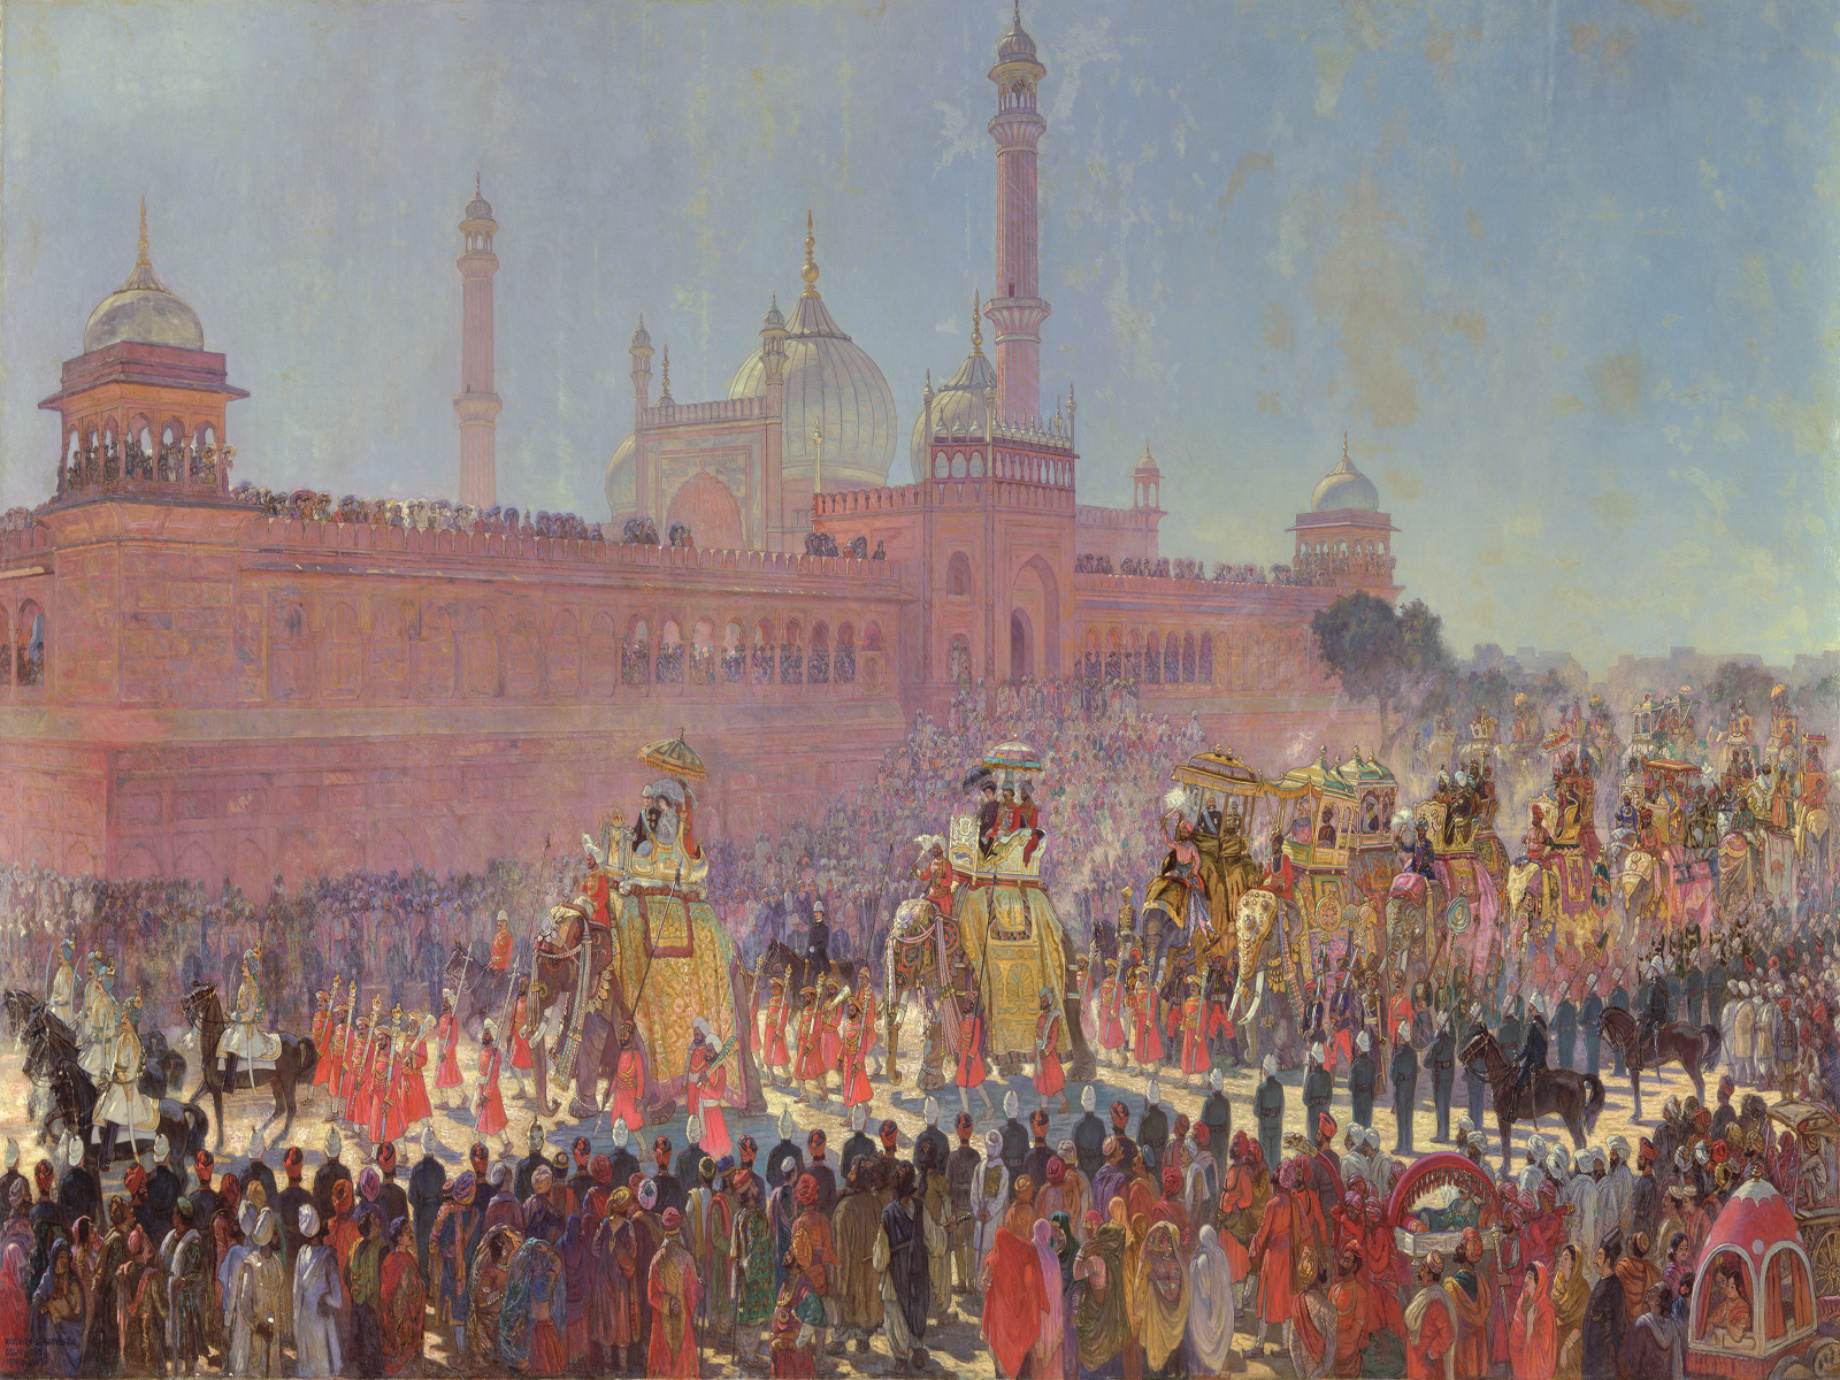 Delhi Durbar parade in 1903.